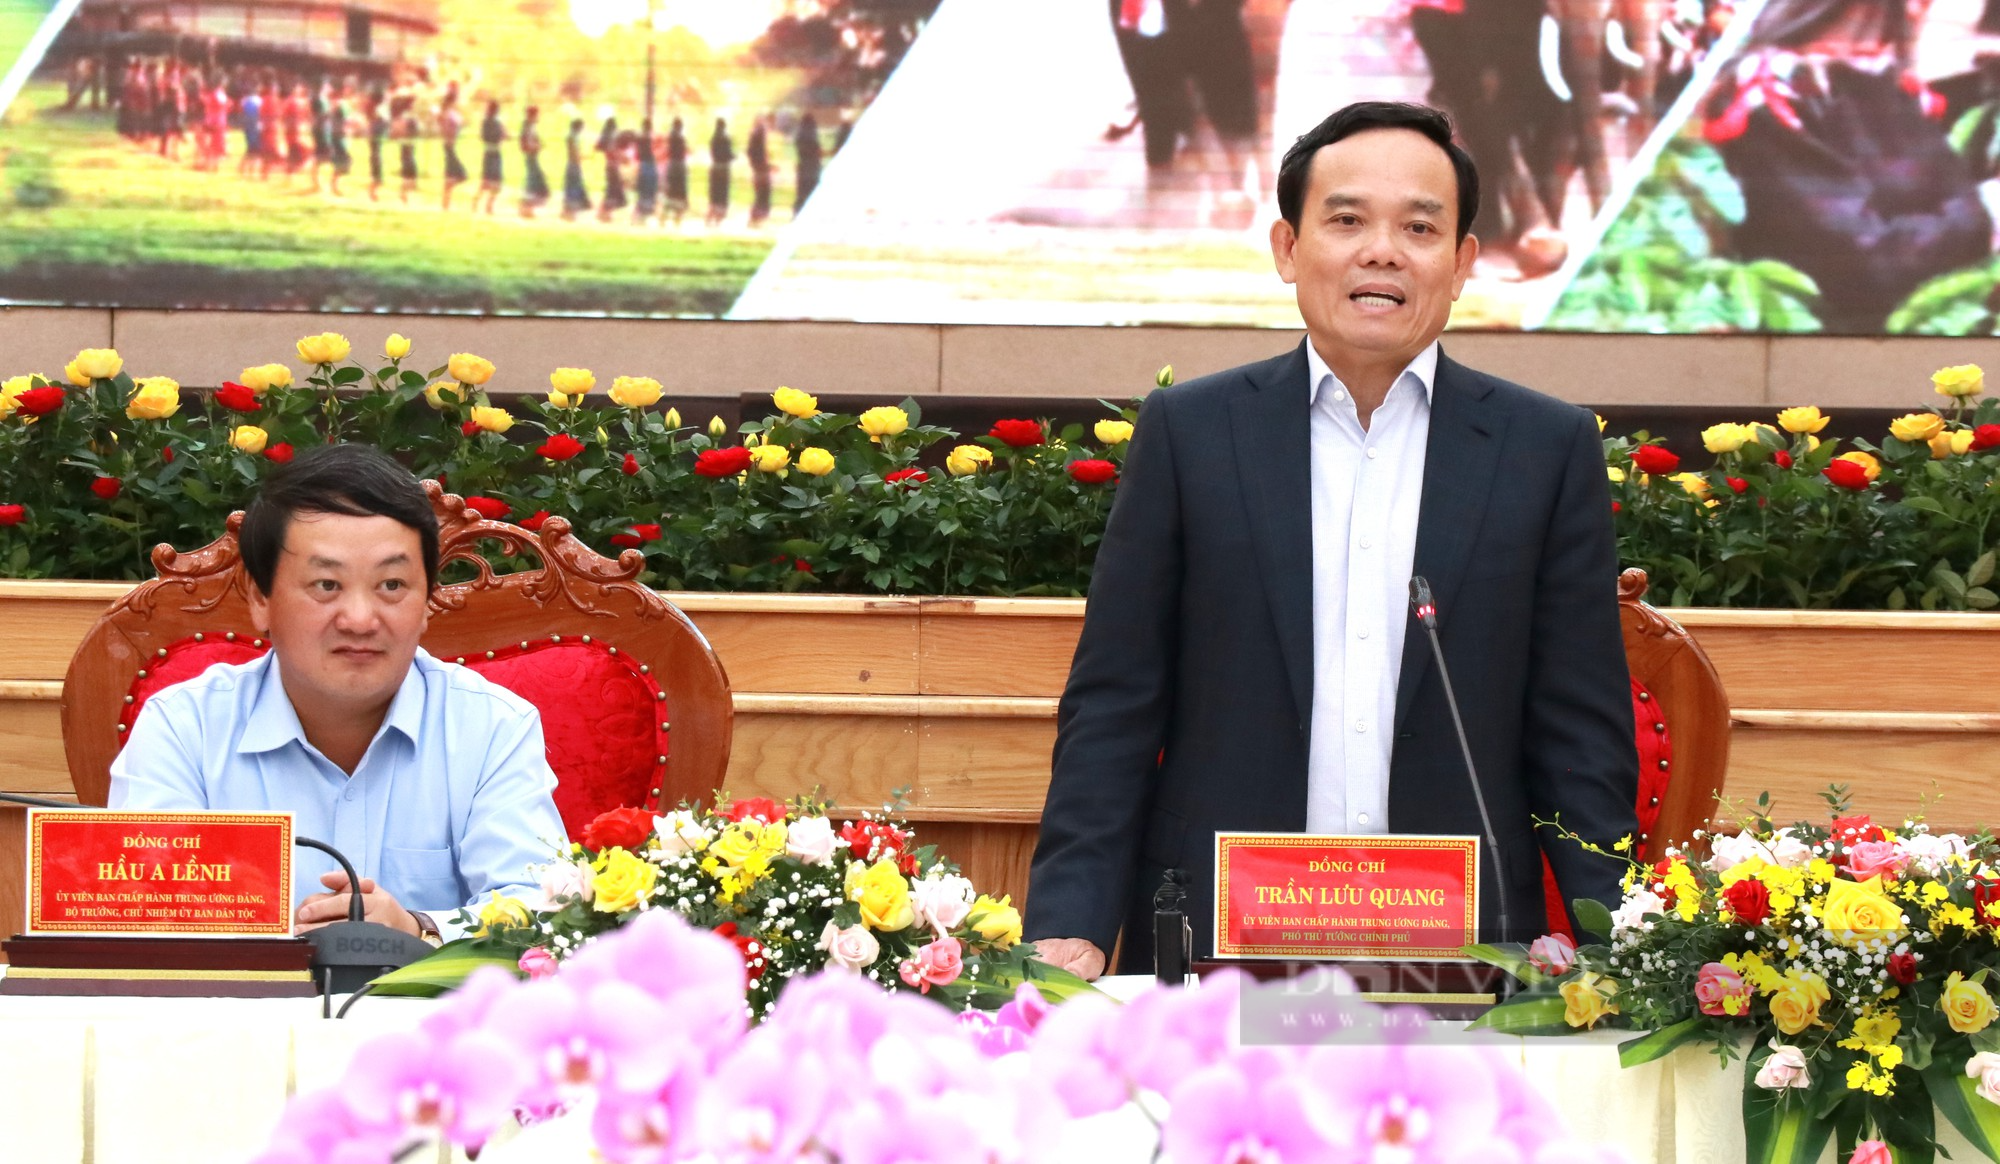 Phó Thủ tướng Trần Lưu Quang: Sản xuất nông nghiệp theo chuỗi ở Tây Nguyên phải vượt qua ranh giới của từng tỉnh - Ảnh 6.